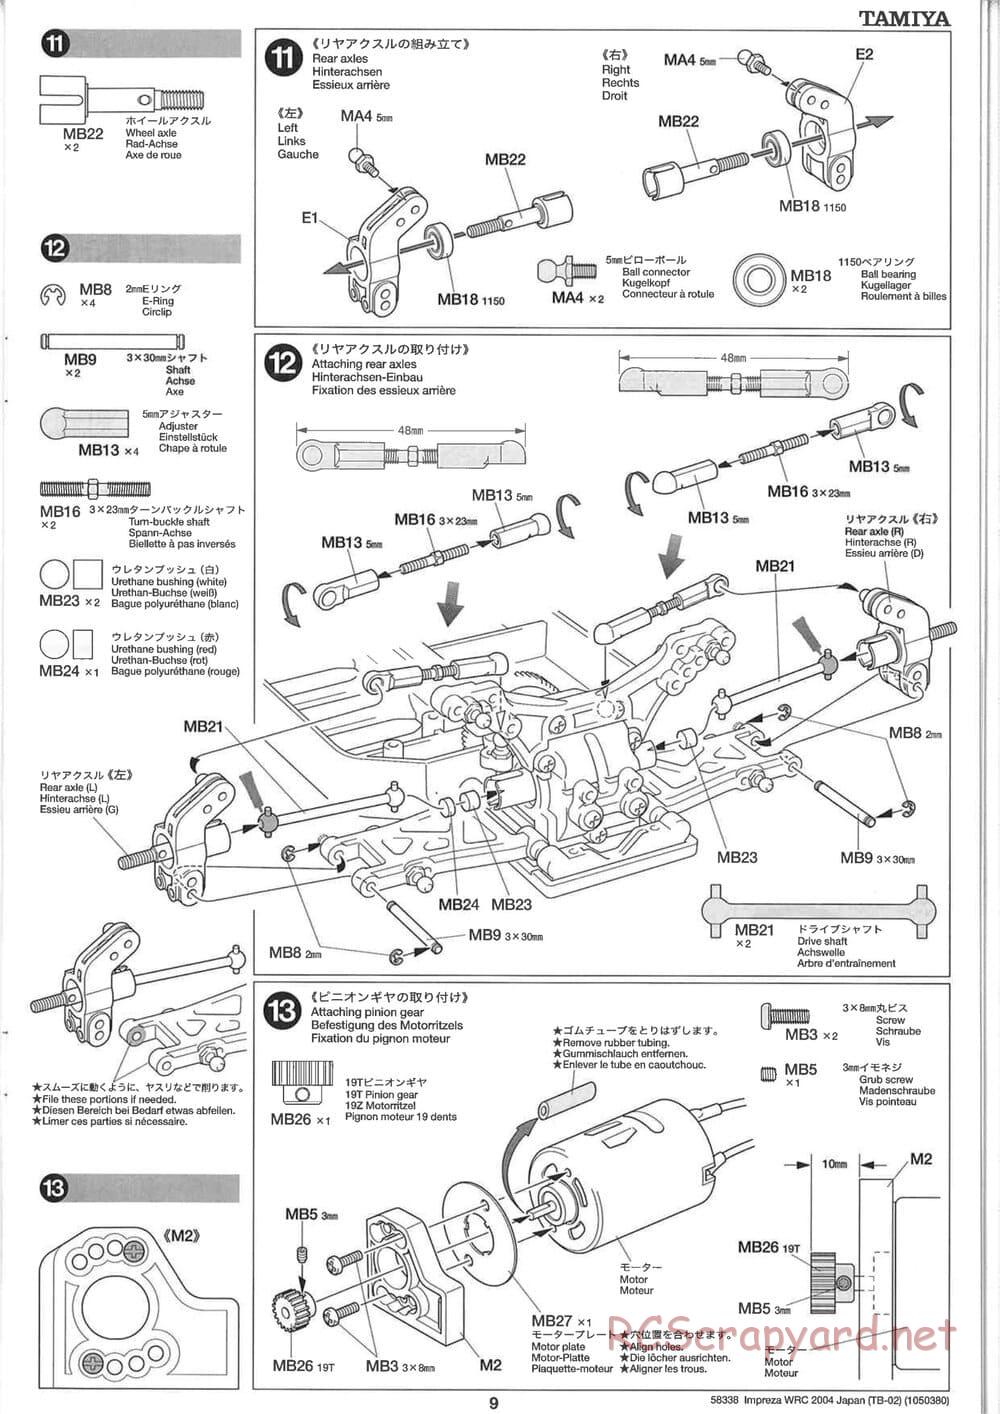 Tamiya - Subaru Impreza WRC 2004 Rally Japan - TB-02 Chassis - Manual - Page 9